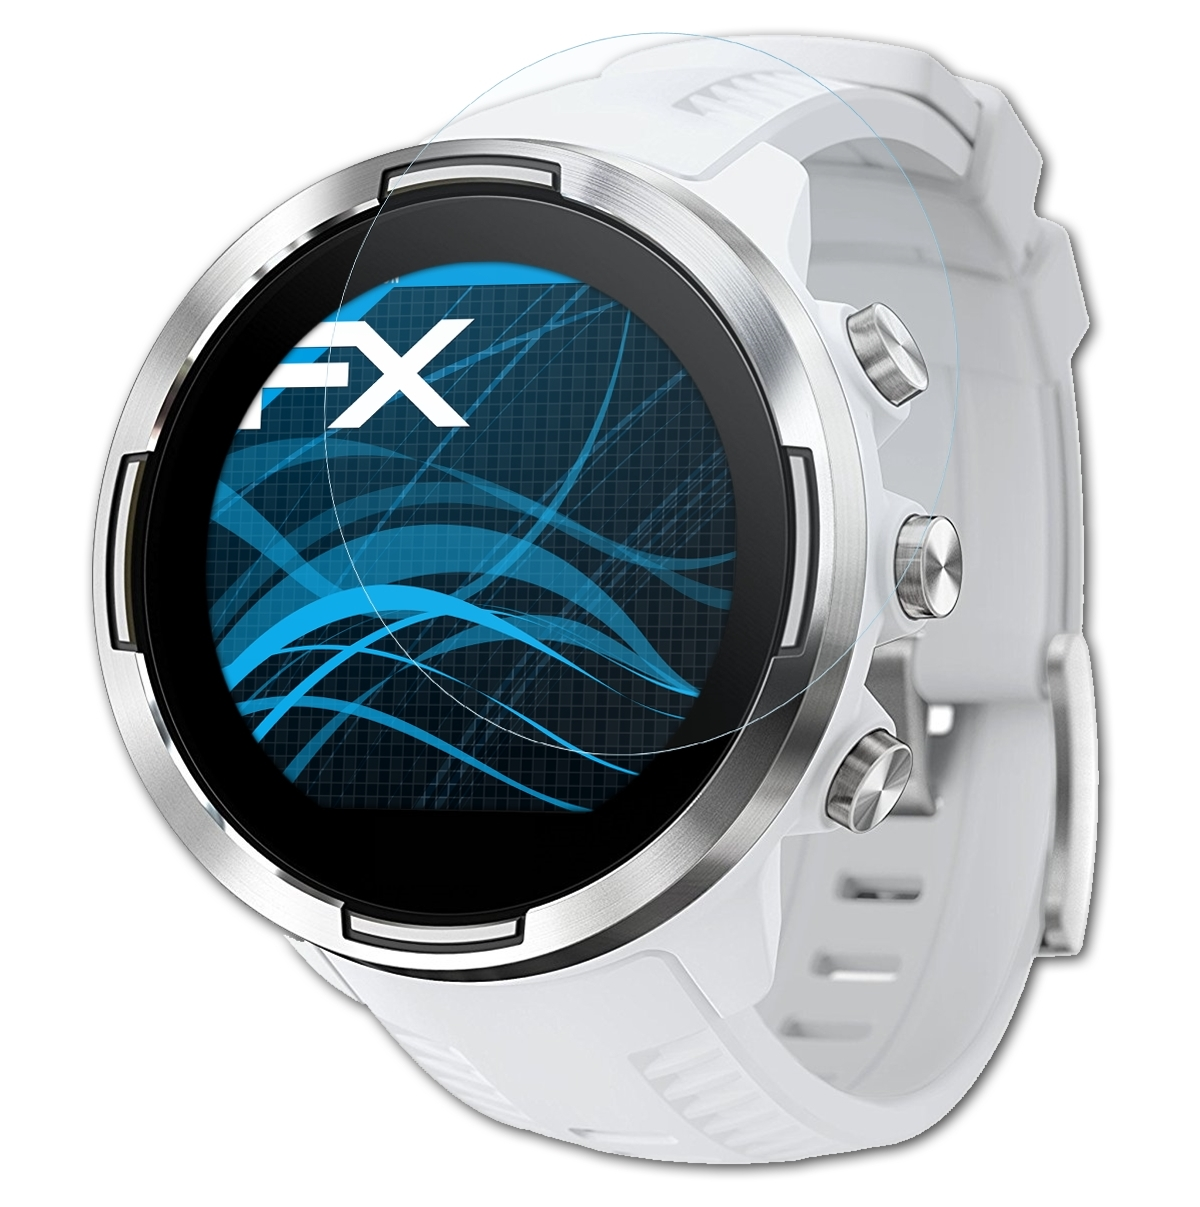 ATFOLIX 3x FX-Clear Displayschutz(für 9) Suunto